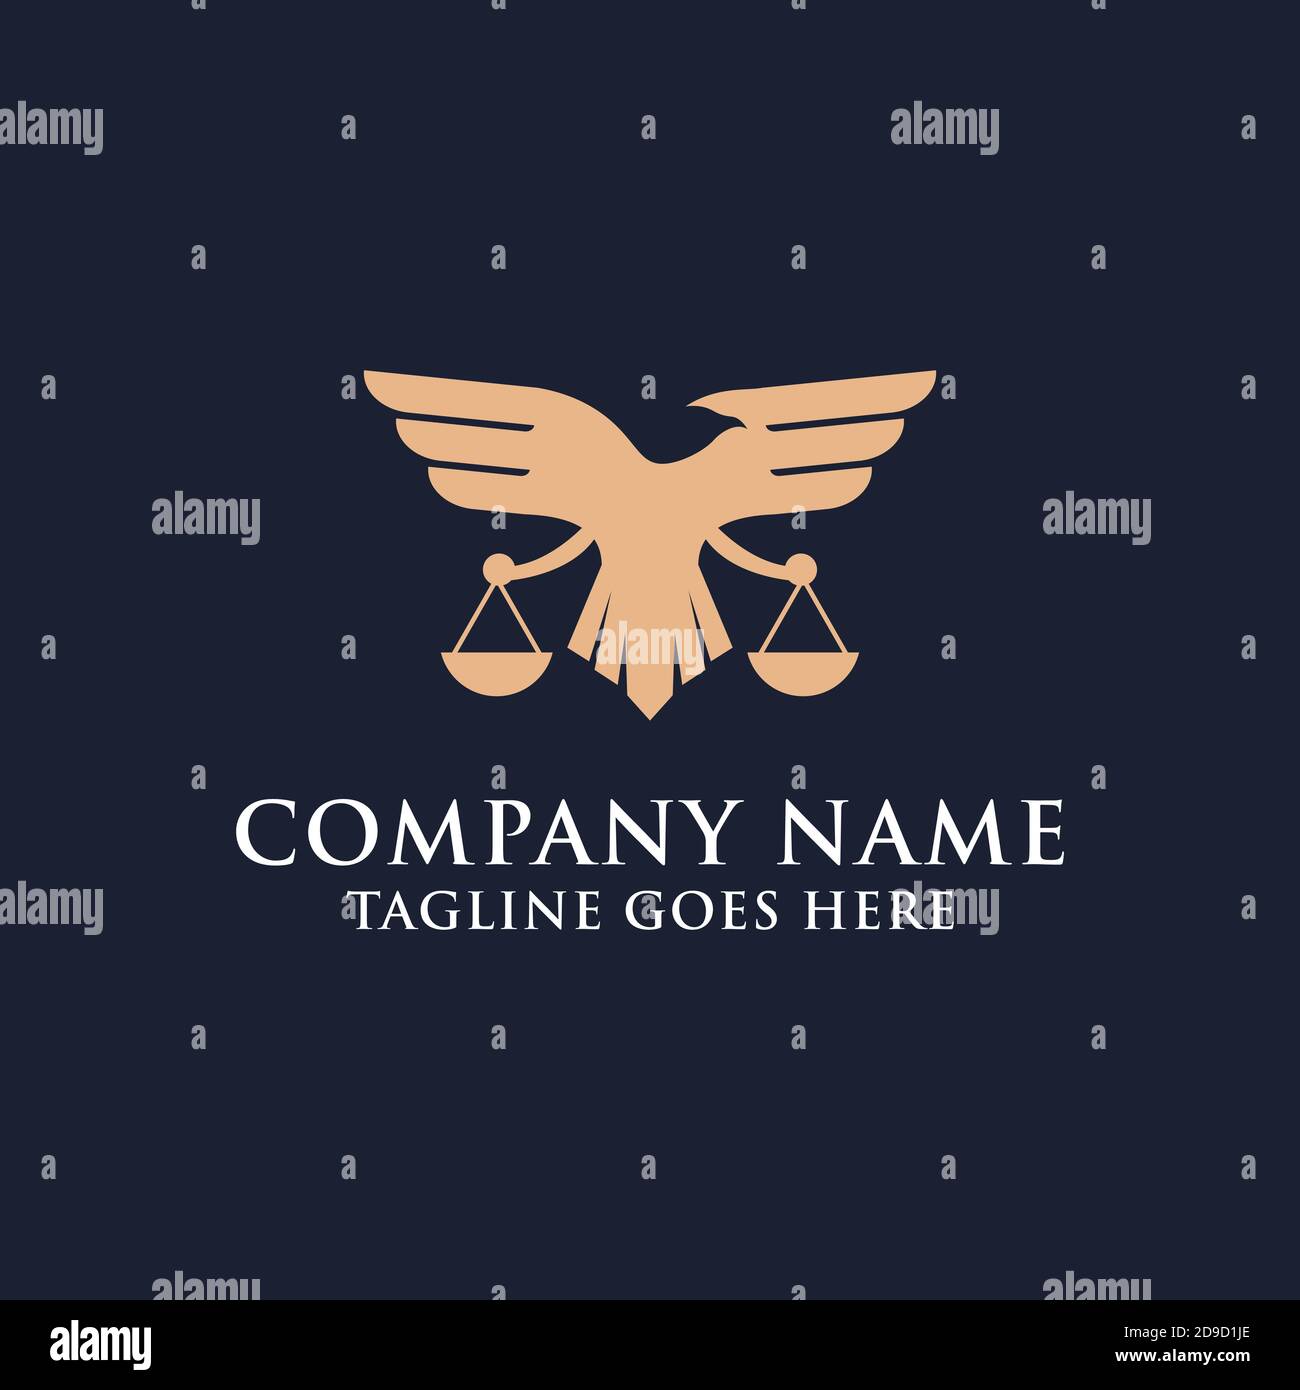 Design de logo de l'entreprise moderne de droit aigle, le meilleur pour votre marque commerciale de l'entreprise de droit des marques Illustration de Vecteur